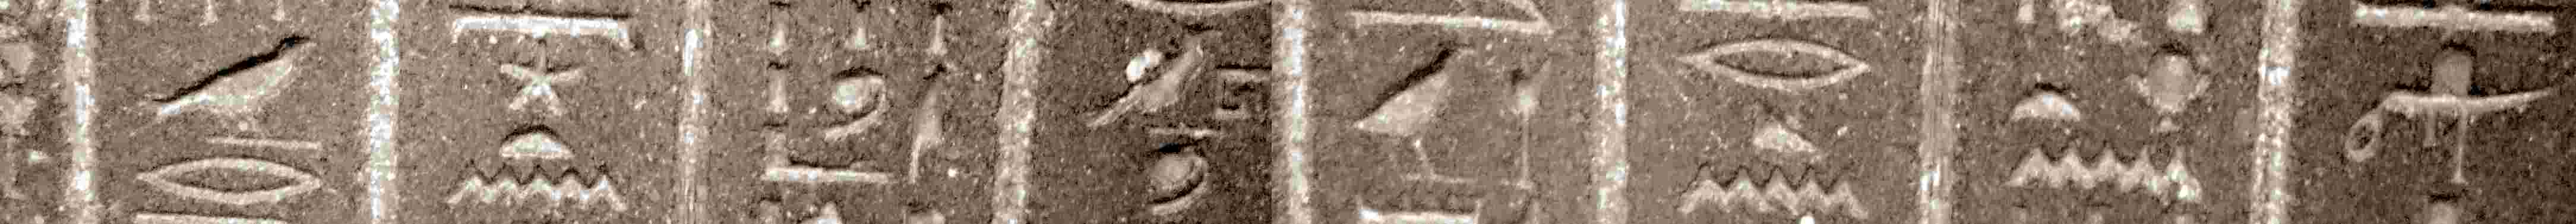 Hieroglyphen Sarkophag British Museum